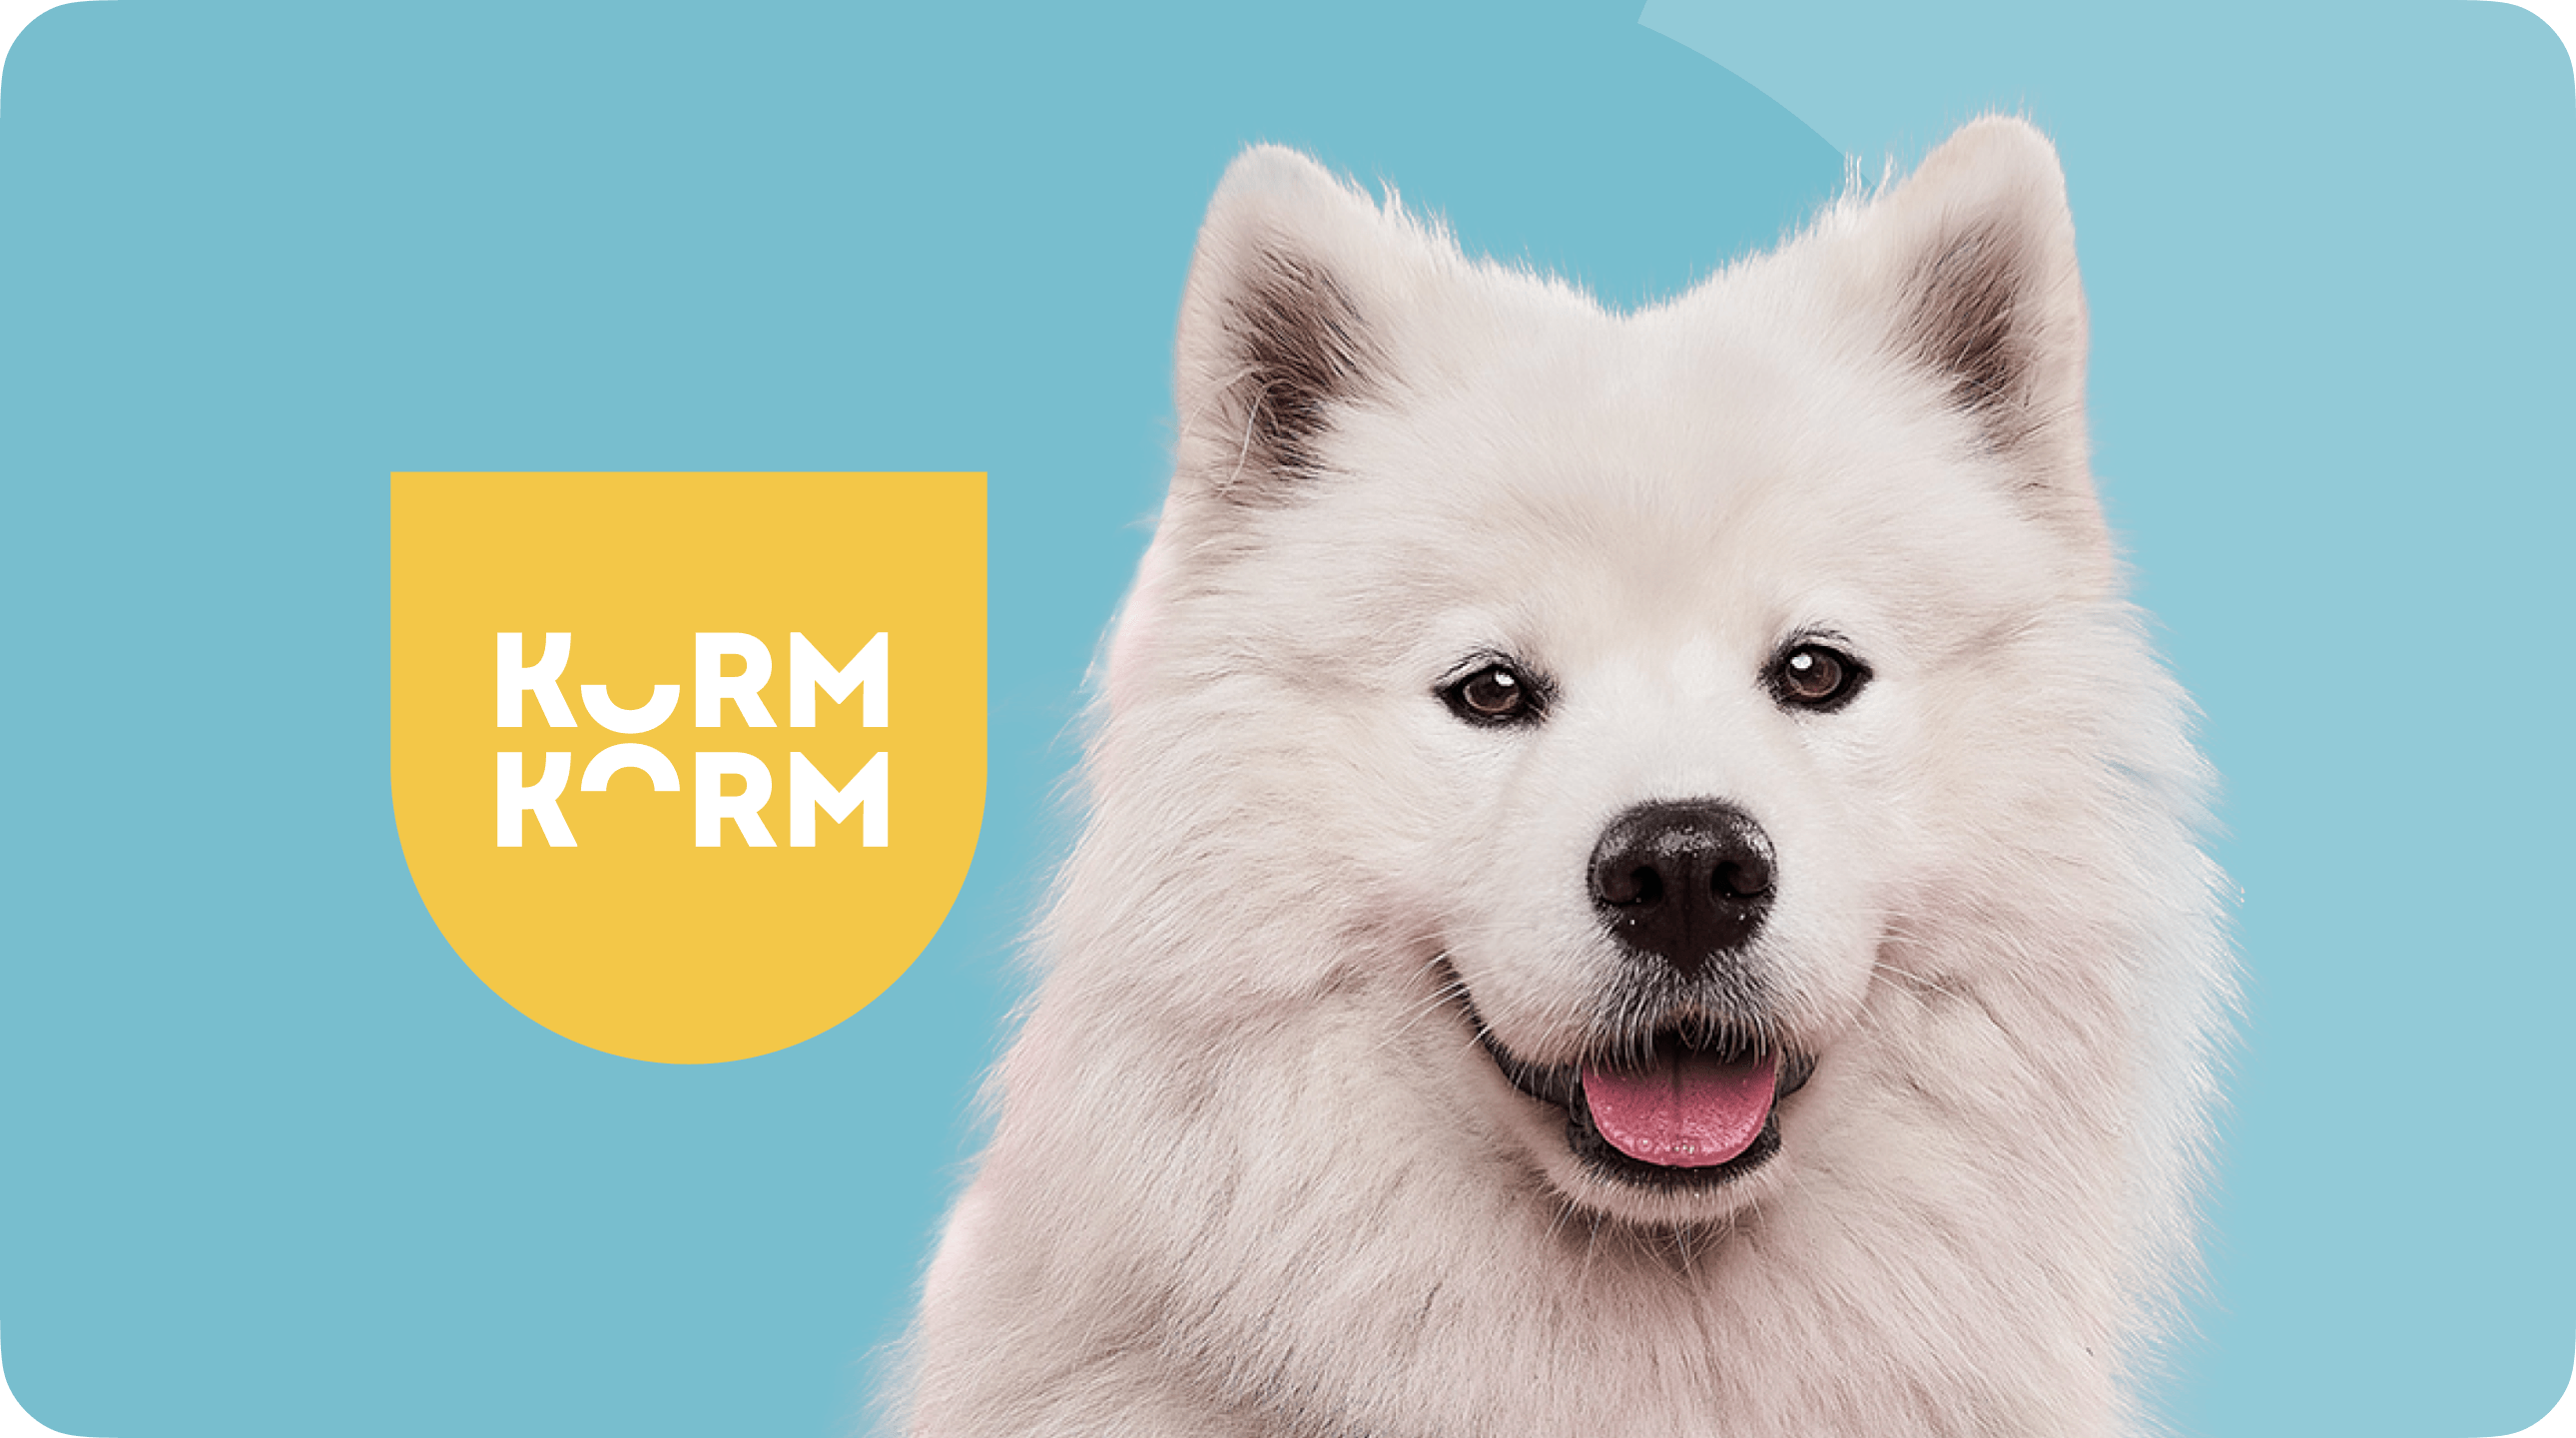 Сайт для «KORMKORM» — доставки натуральных рационов для собак